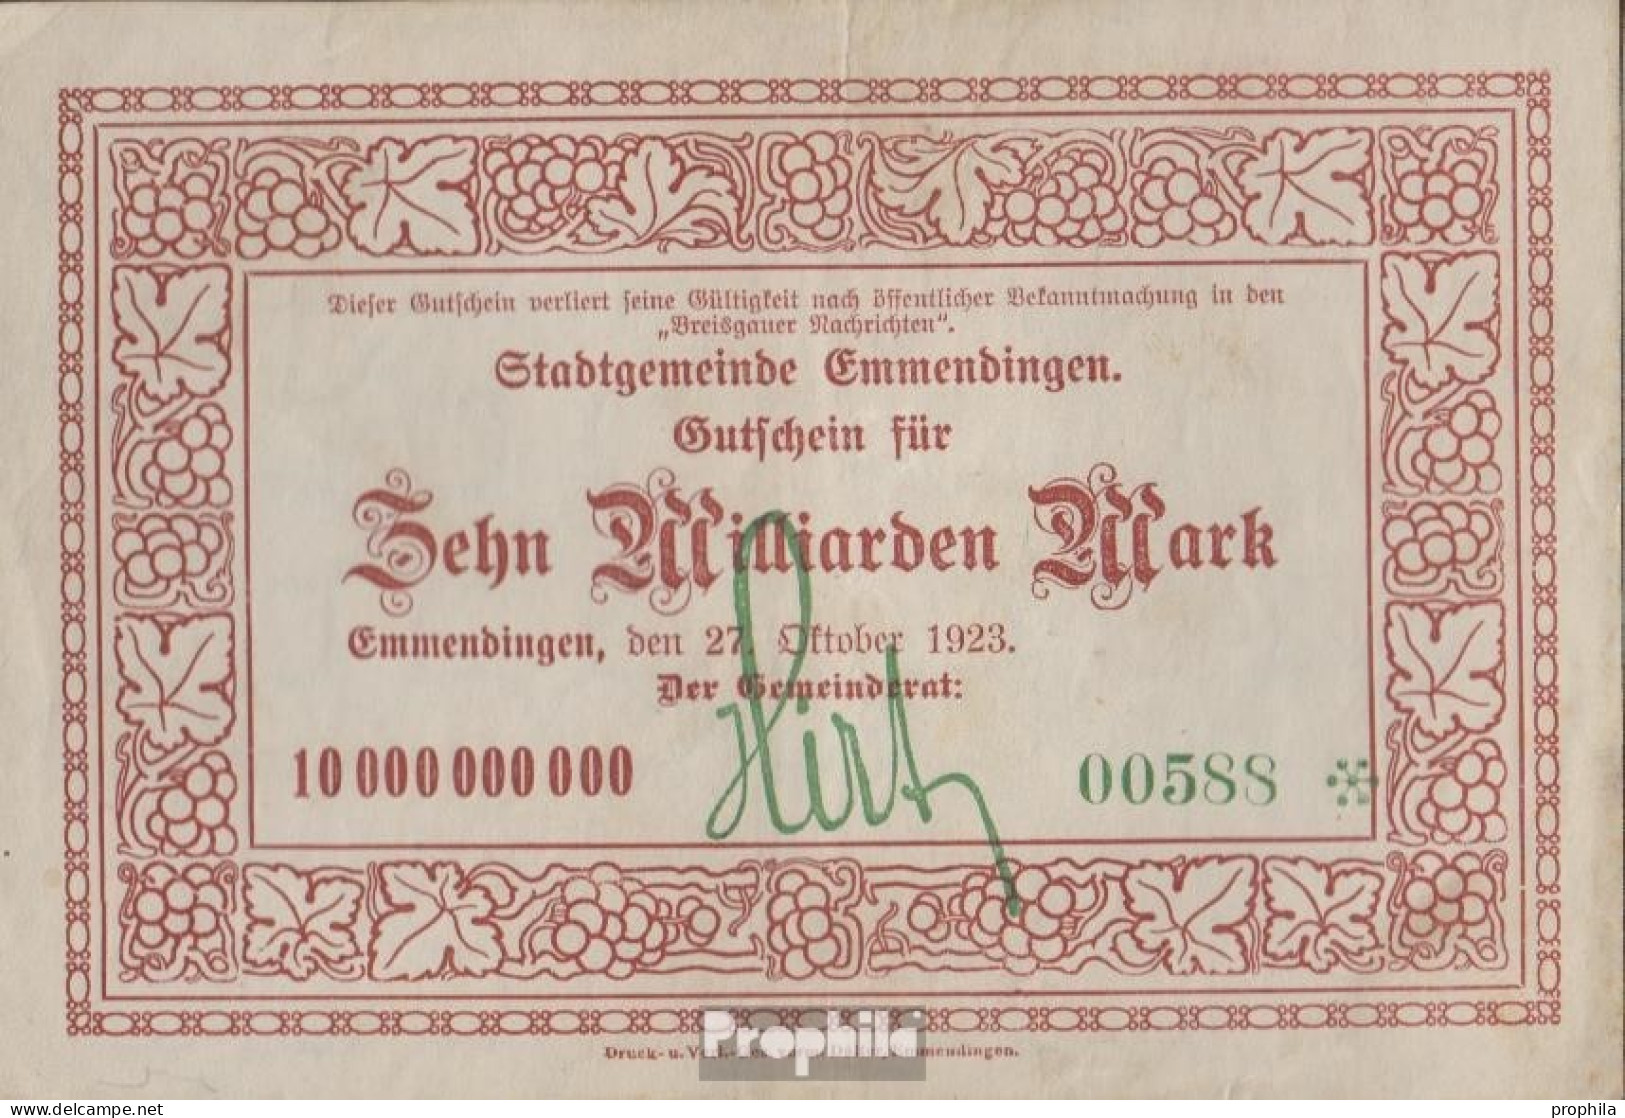 Emmendingen Inflationsgeld Stadt Emmendingen Gebraucht (III) 1923 10 Milliarden Mark - 10 Mrd. Mark